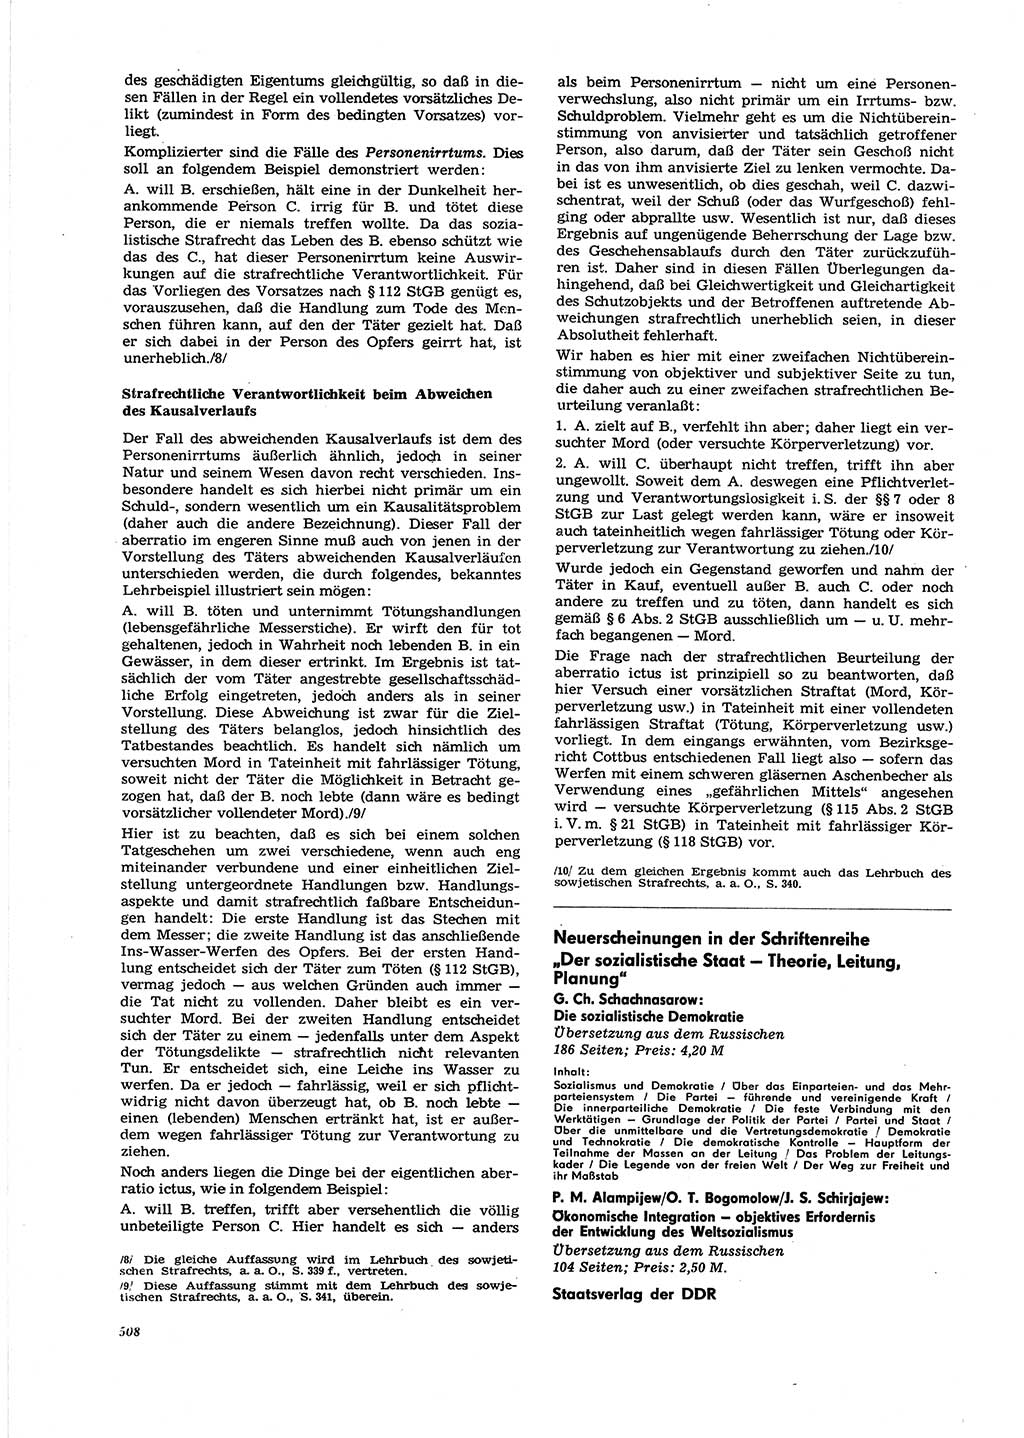 Neue Justiz (NJ), Zeitschrift für Recht und Rechtswissenschaft [Deutsche Demokratische Republik (DDR)], 27. Jahrgang 1973, Seite 508 (NJ DDR 1973, S. 508)